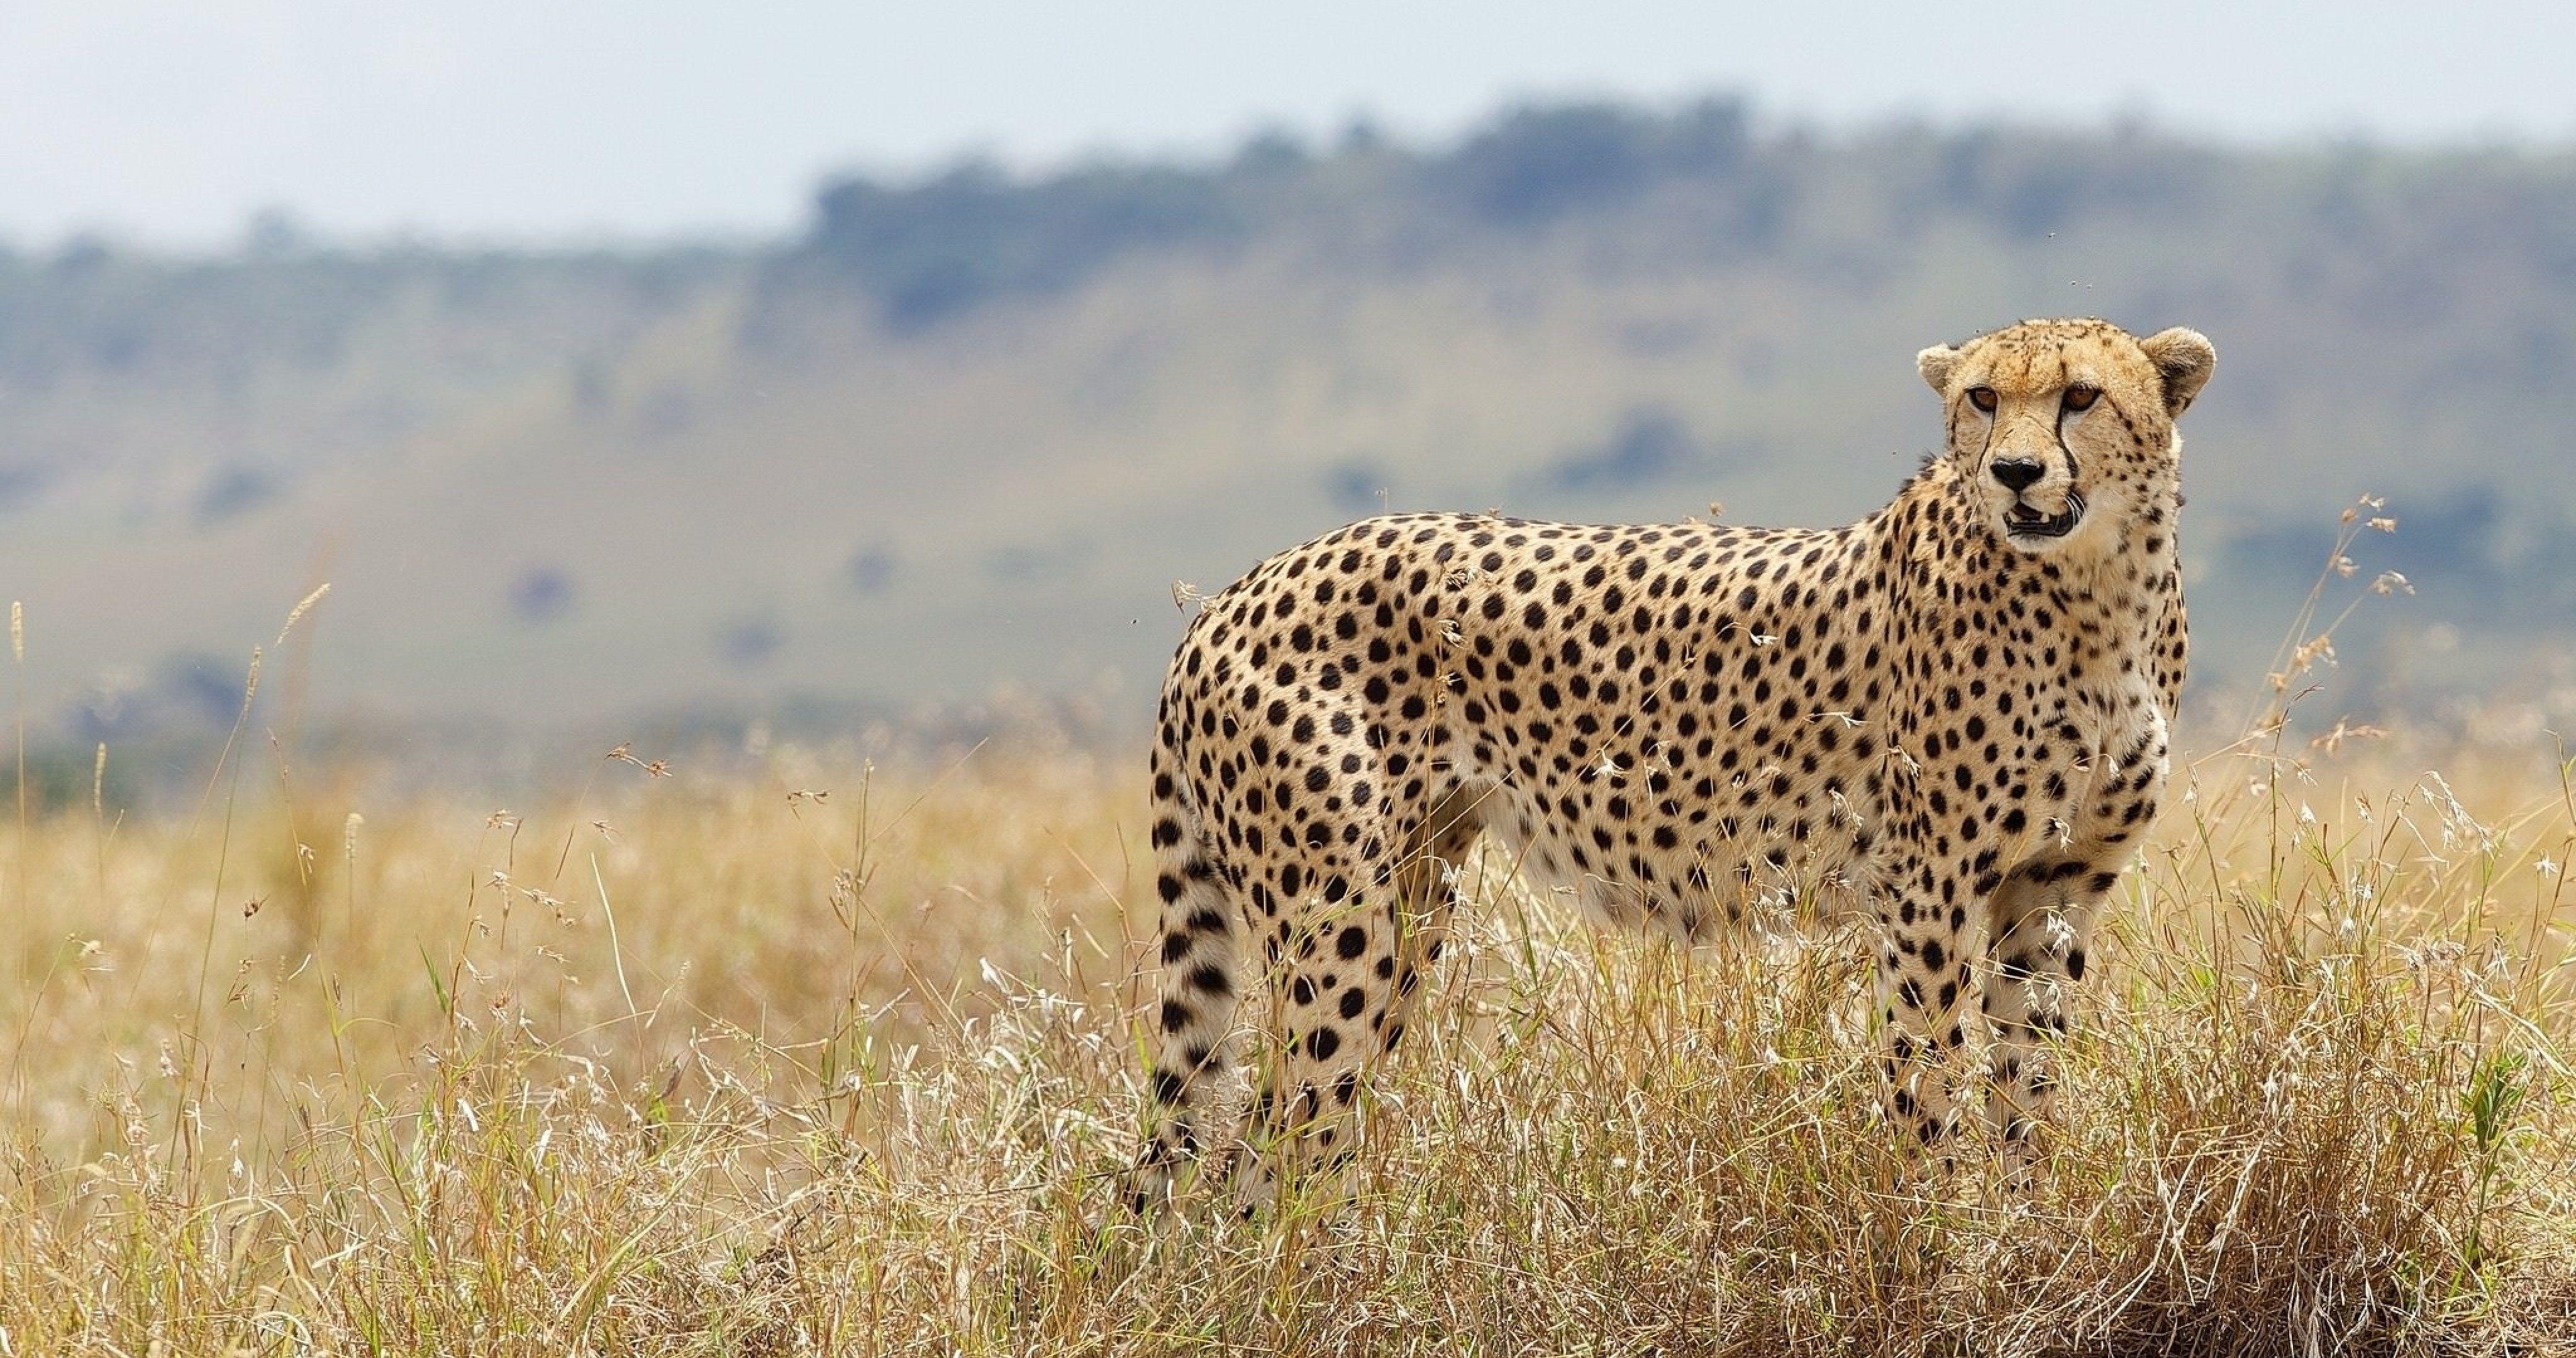 4096x2160 cheetah mèo hoang trong cỏ Hình nền 4k cực HD Tường chất lượng cao